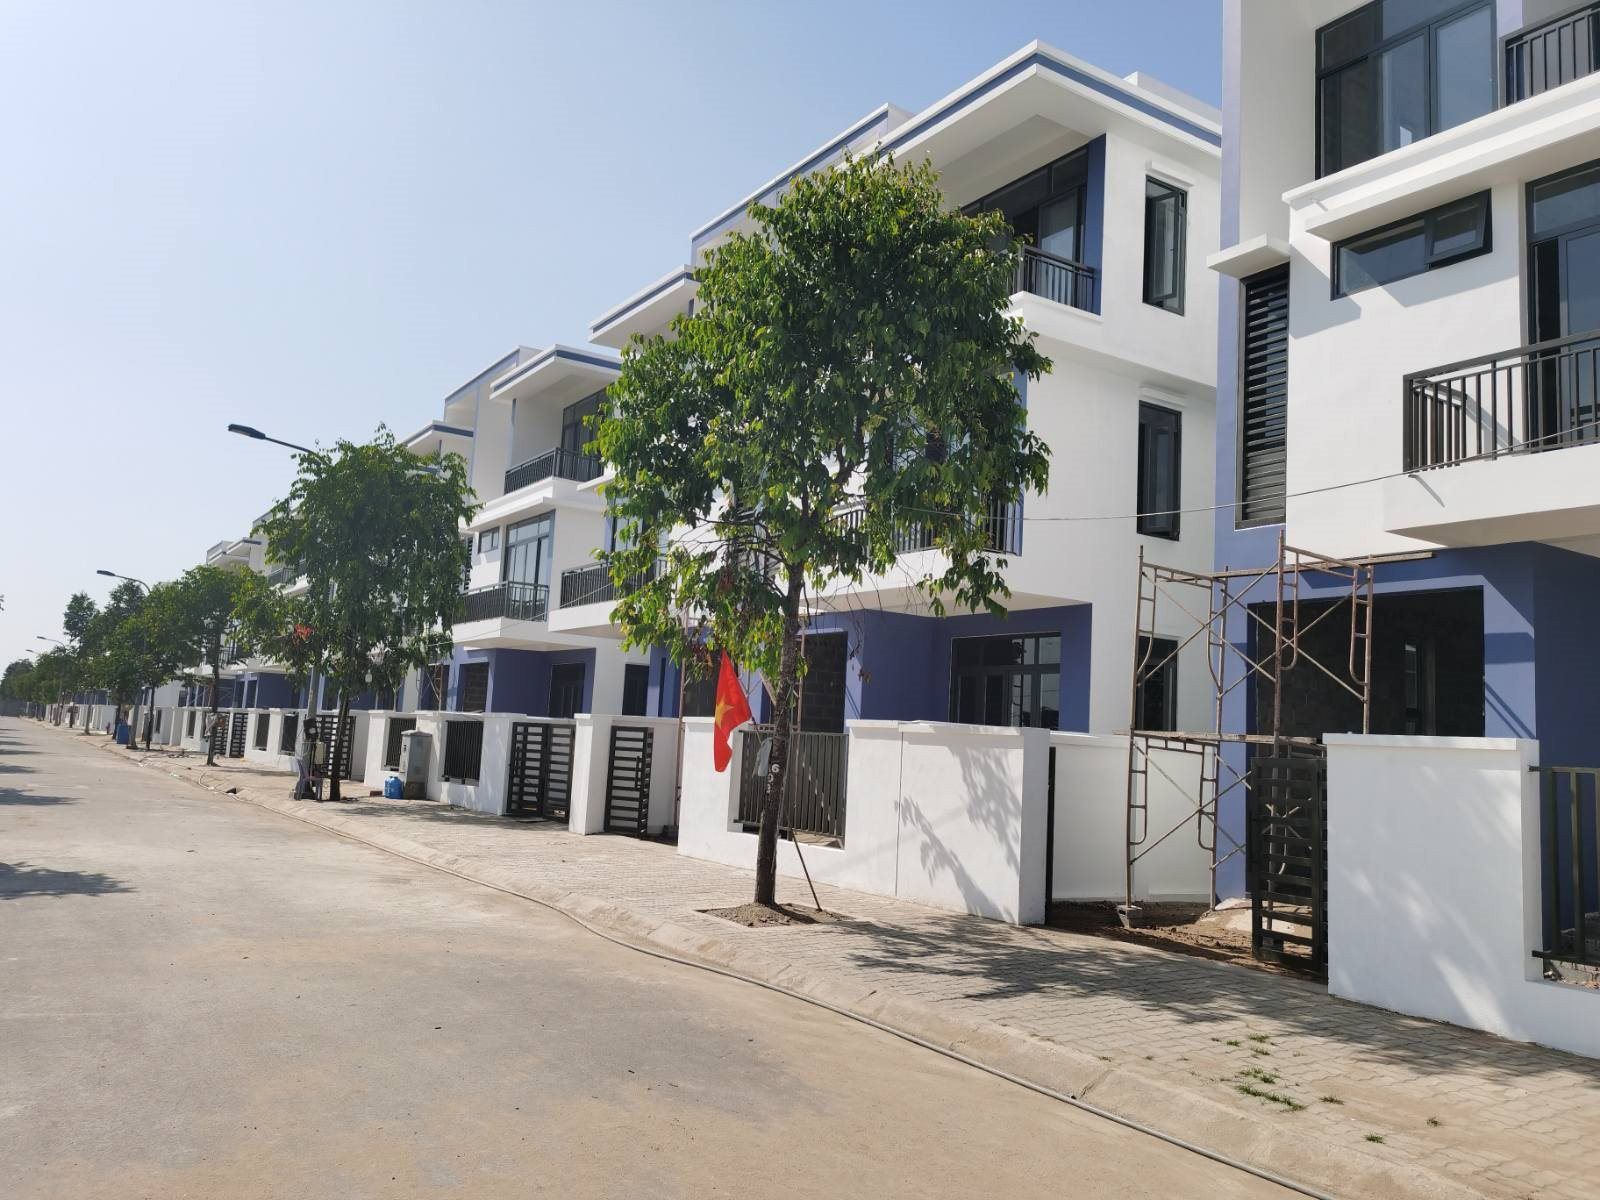 Diễn biến trái chiều của thị trường bất động sản nhà phố tại Hà Nội và TP. HCM - Ảnh 1.